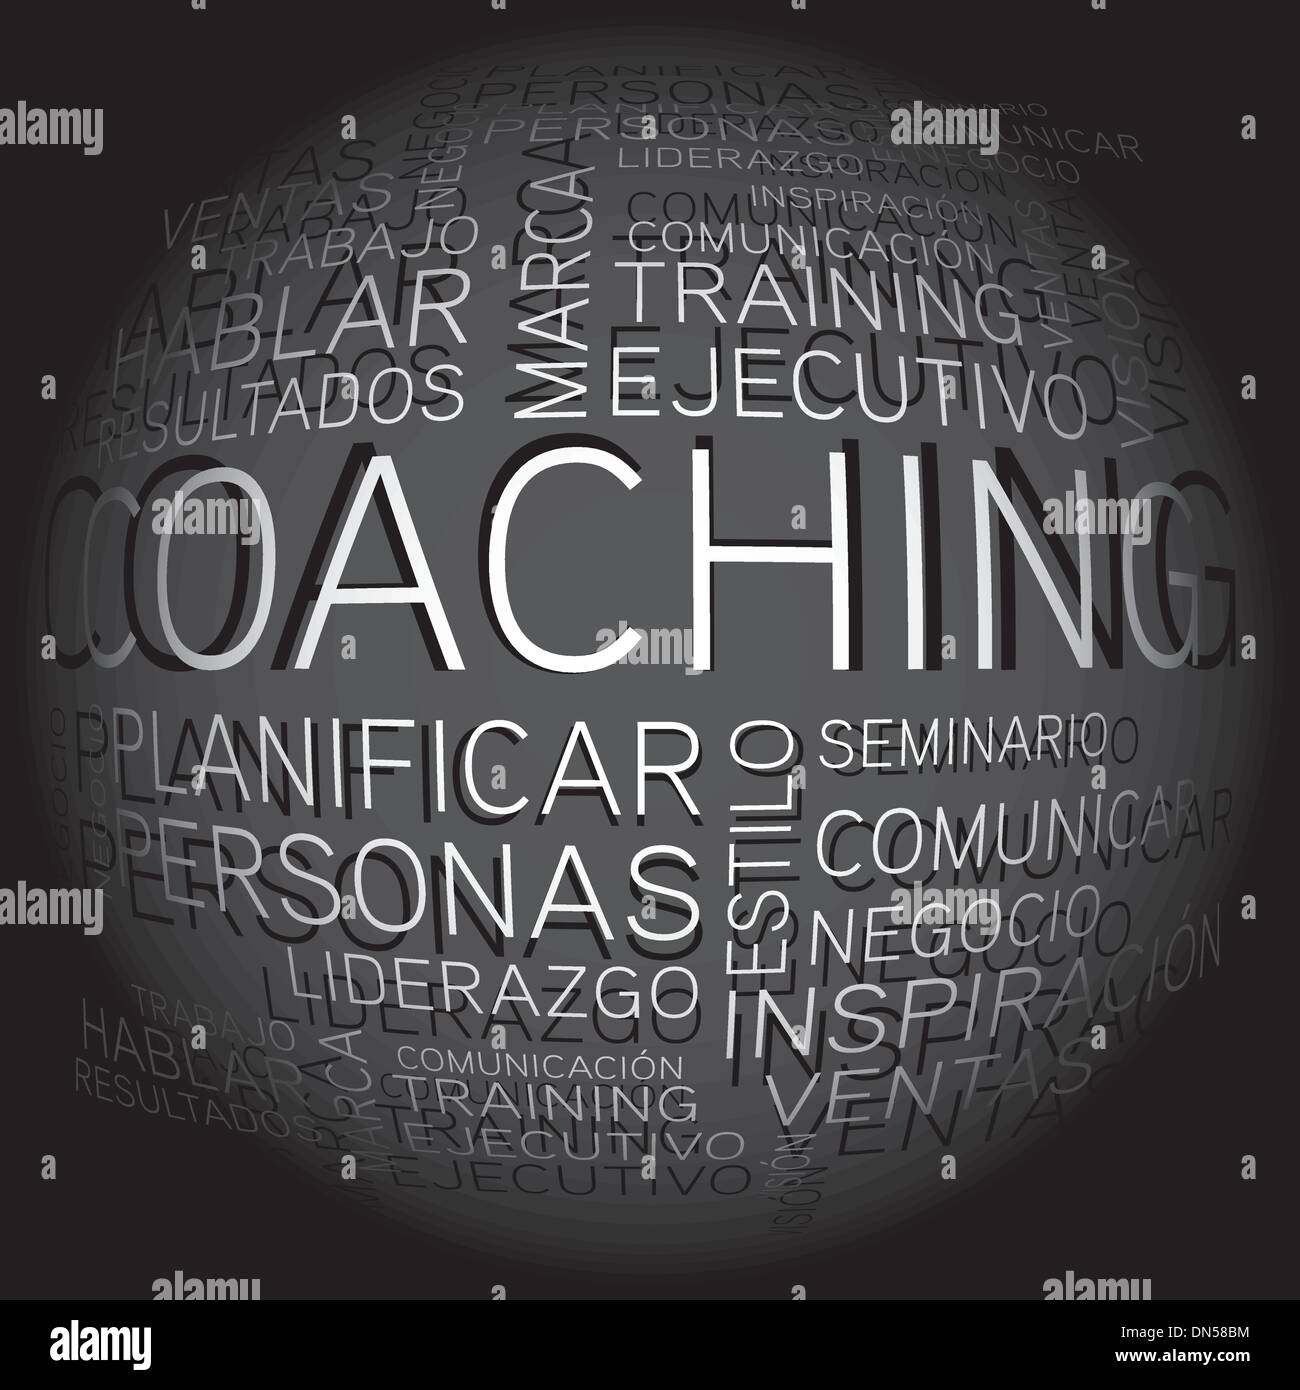 Coaching-Konzept Verwandte spanische Wörter im tag Stock Vektor